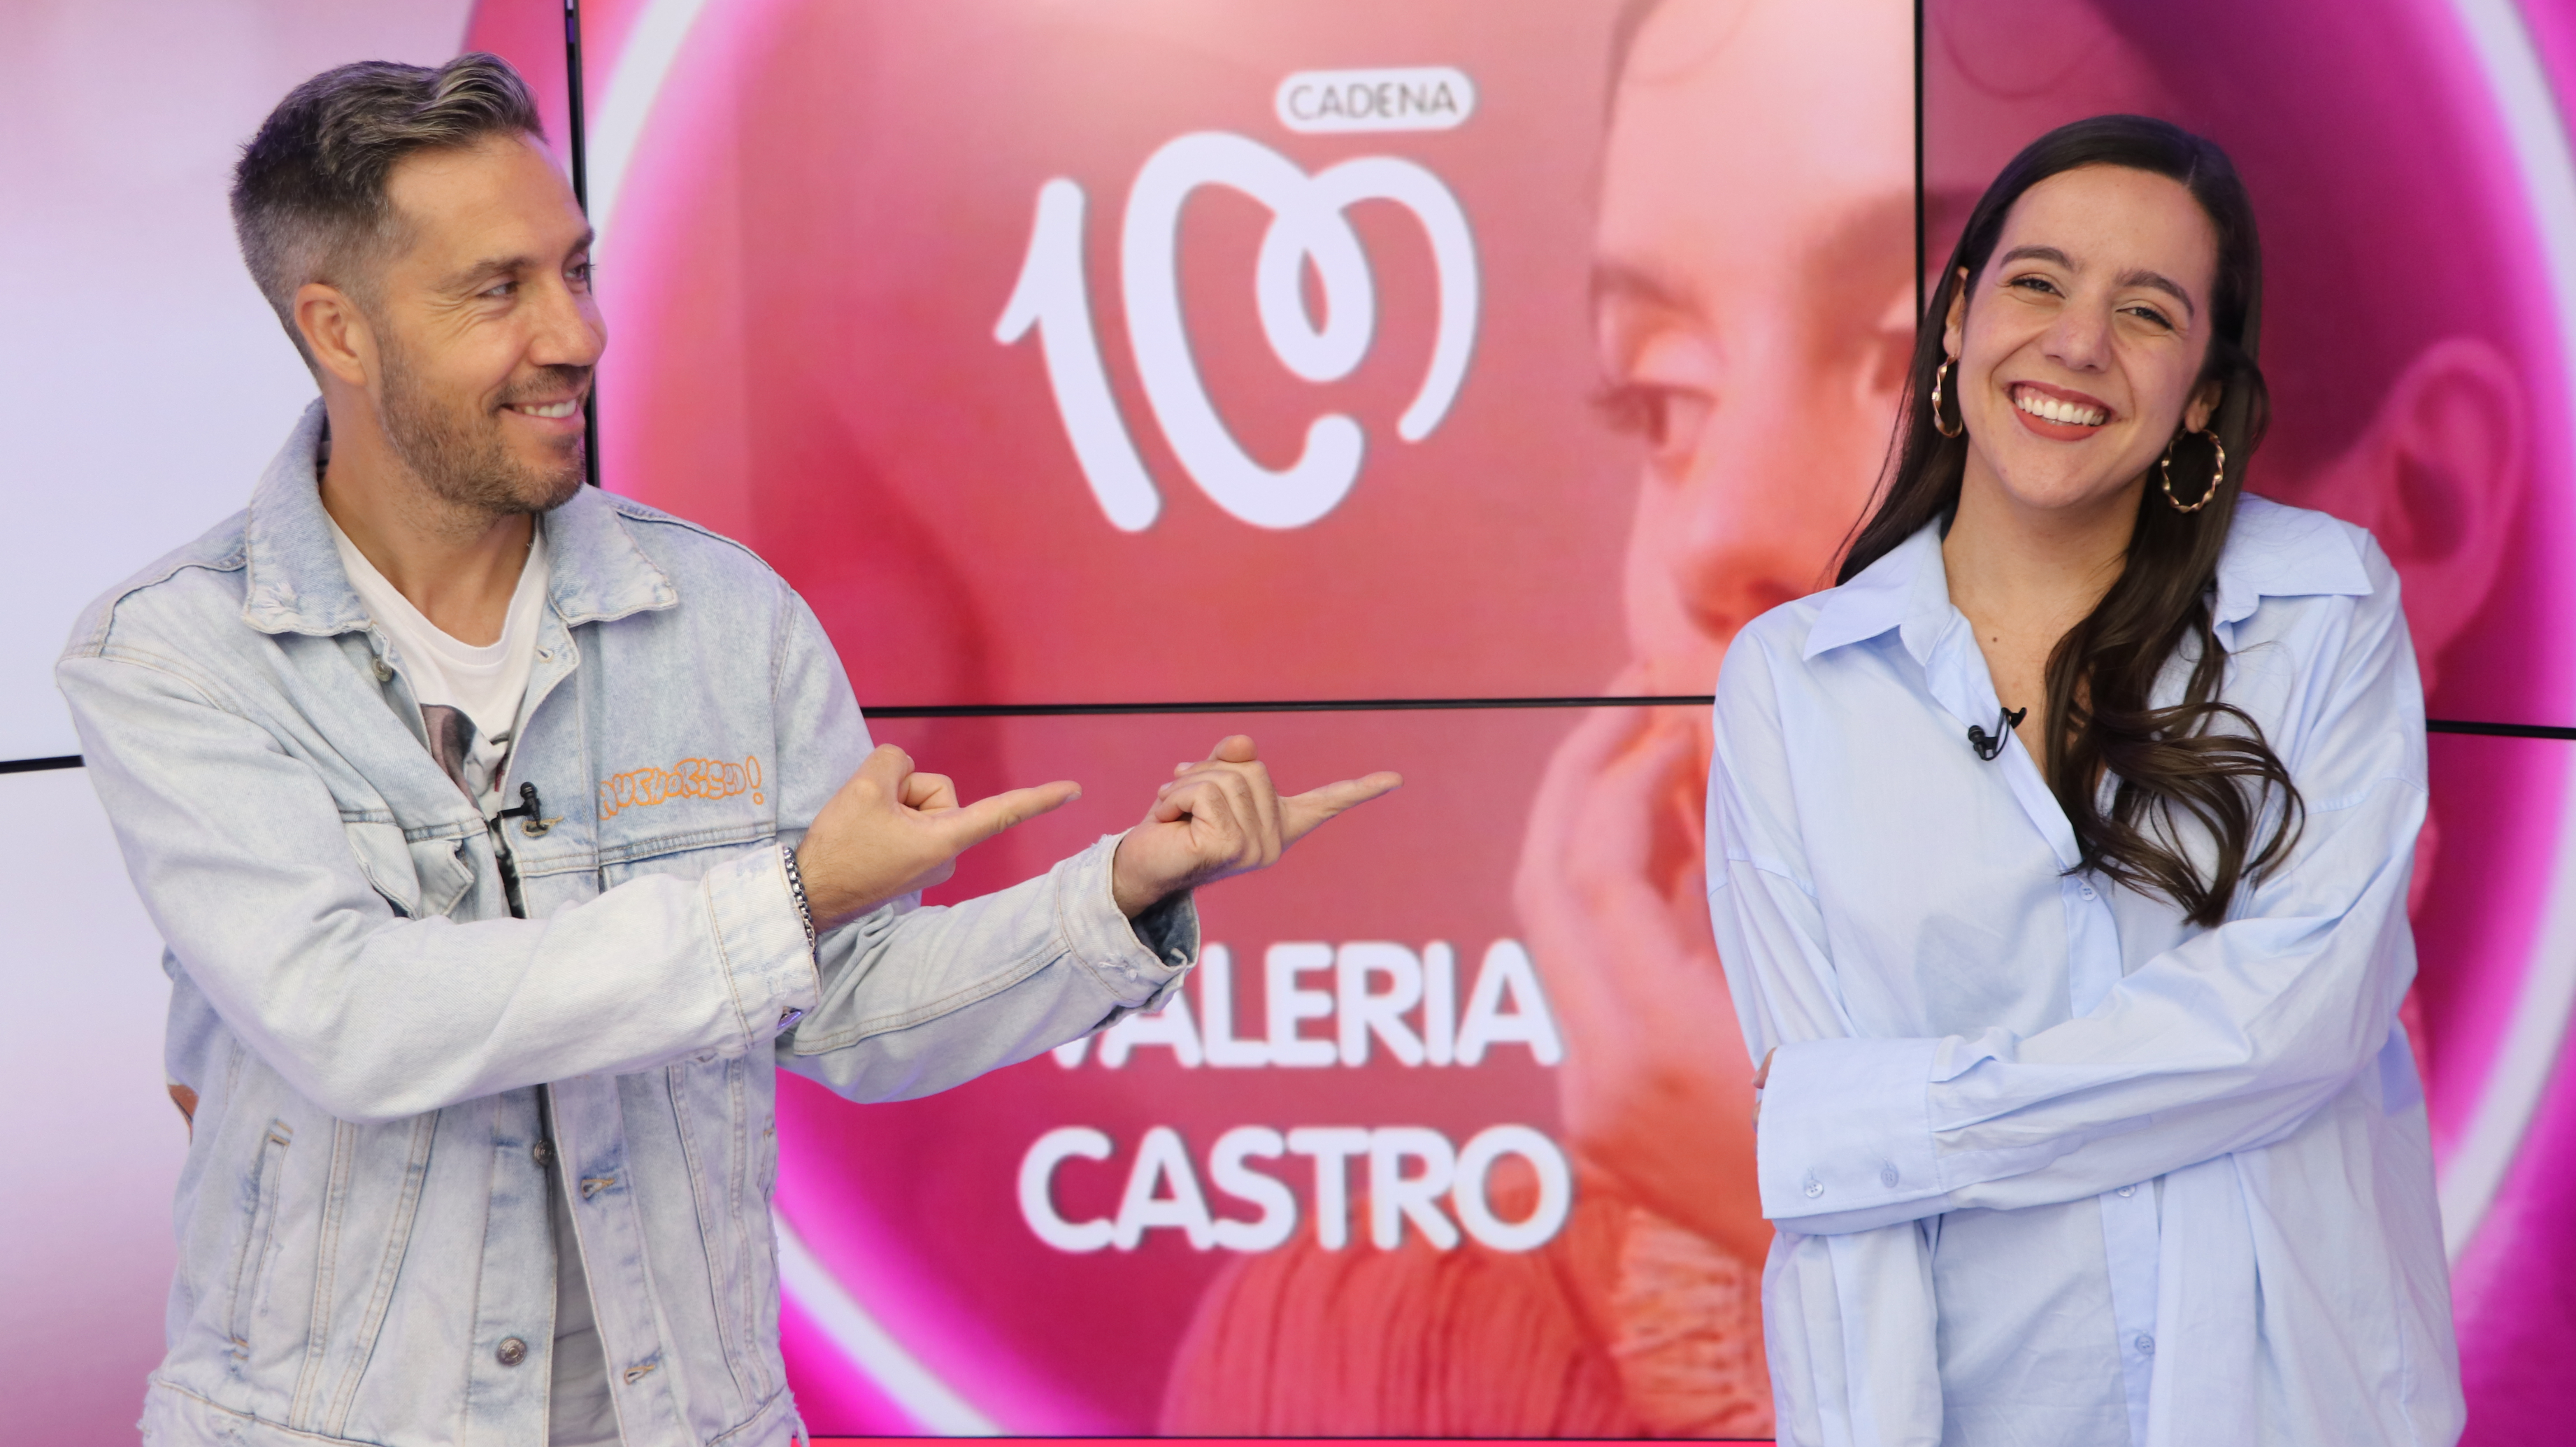 Valeria Castro nos descubre su talento en CADENA 100: "Mi música fluye mucho"